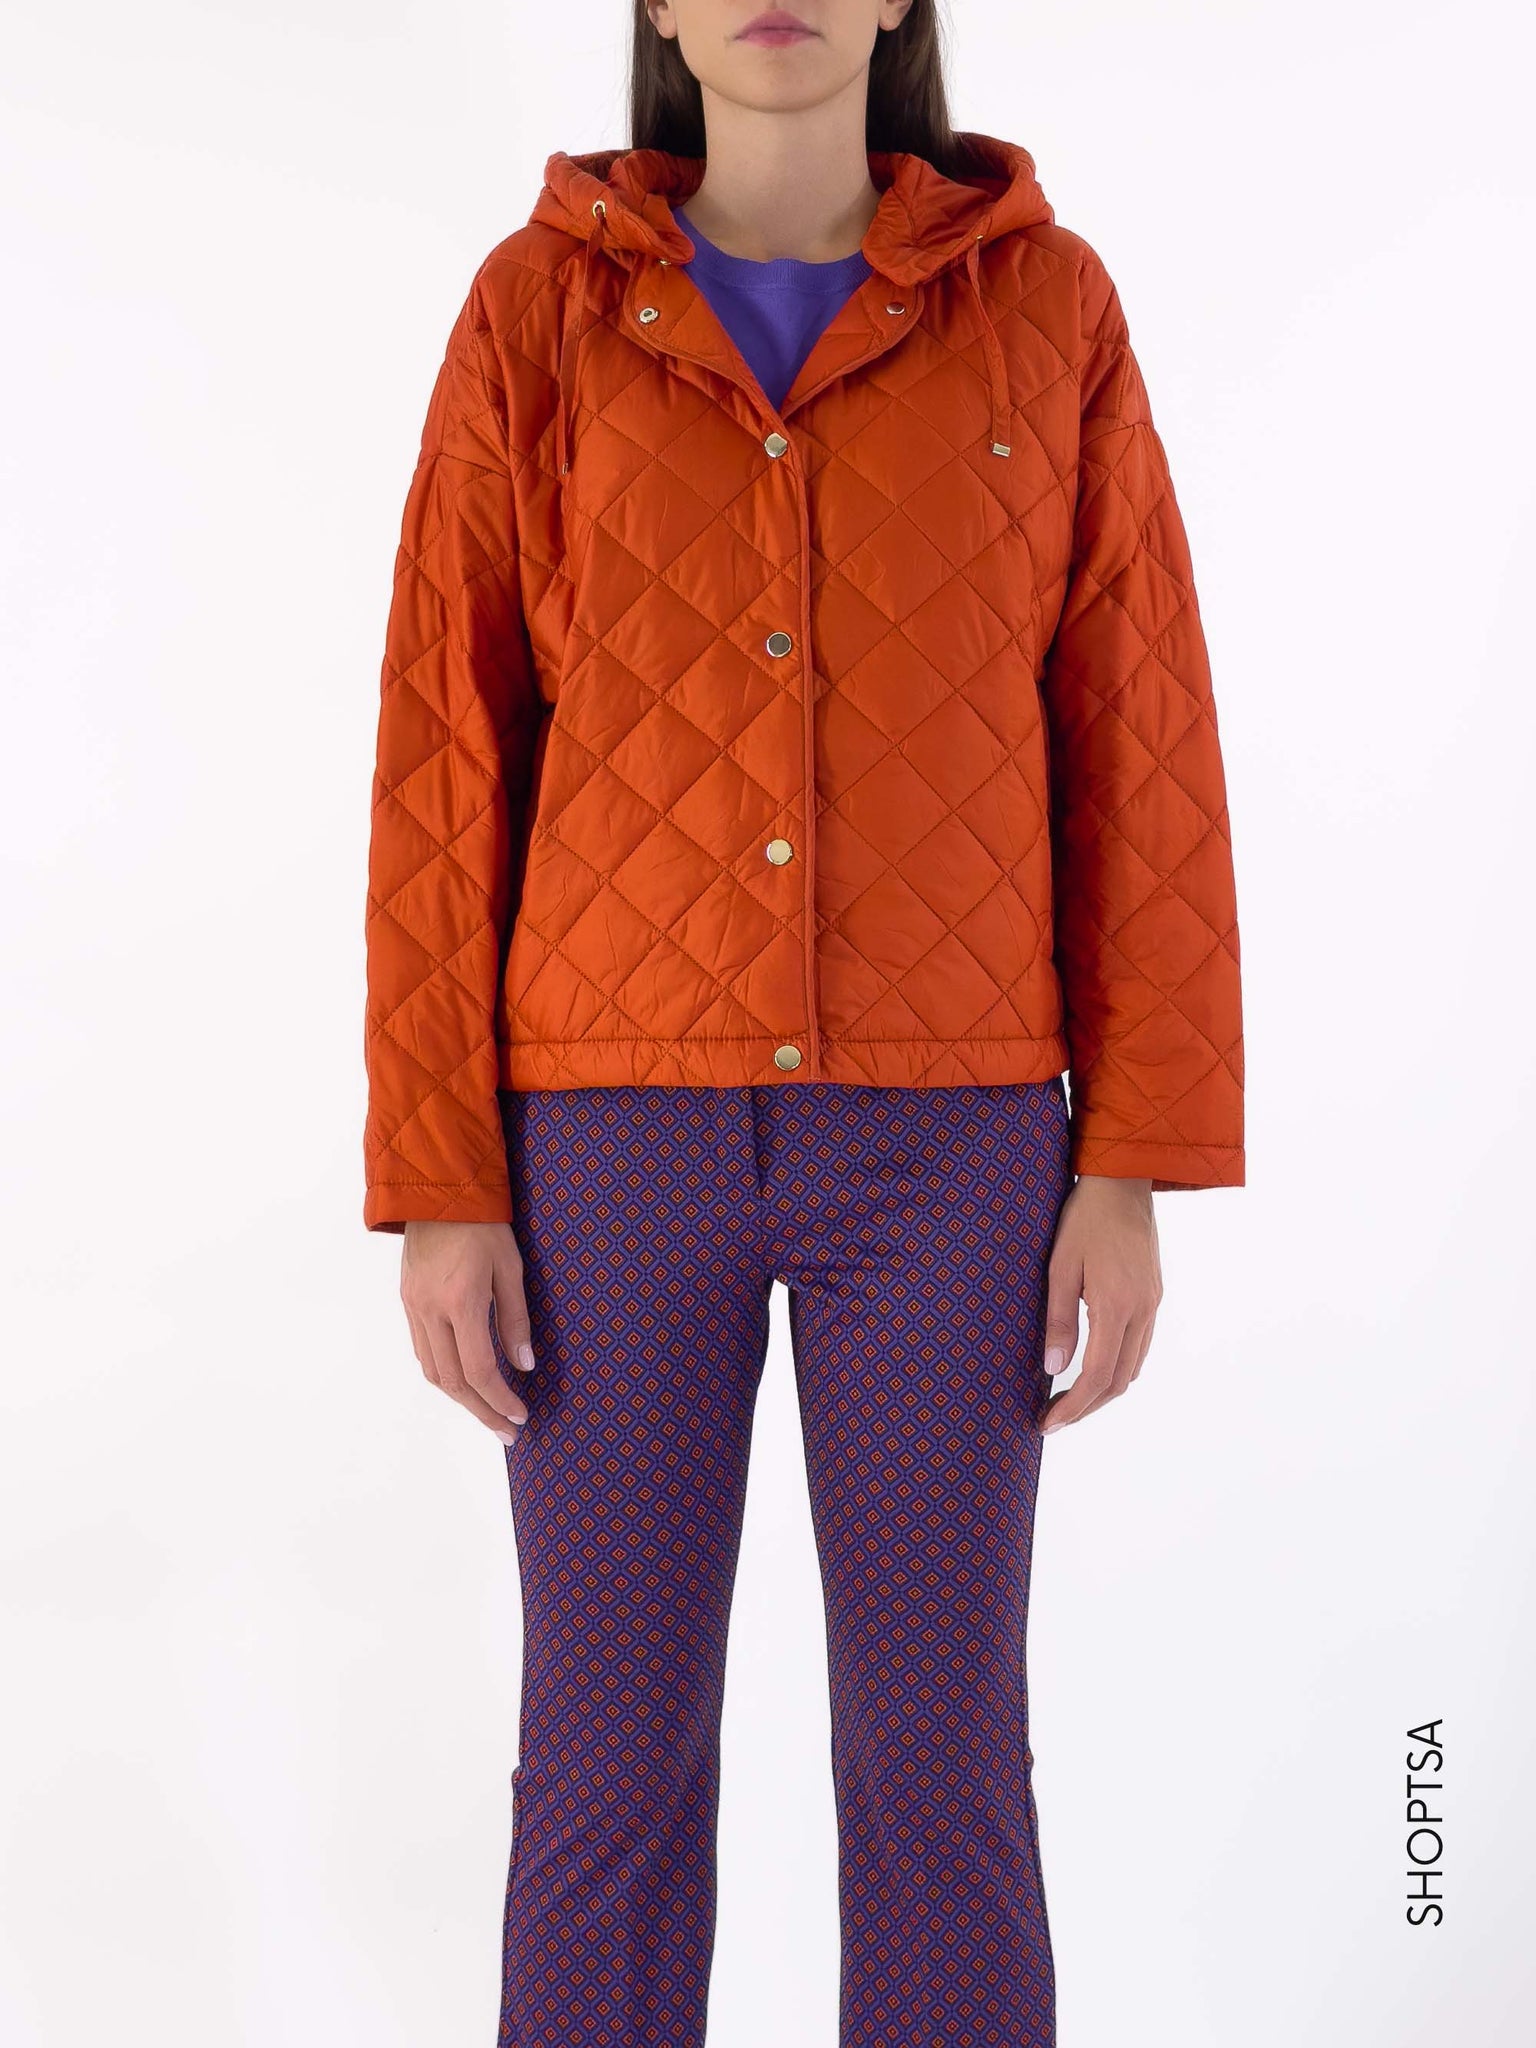 APOGEO oversized jacket - EMME Marella